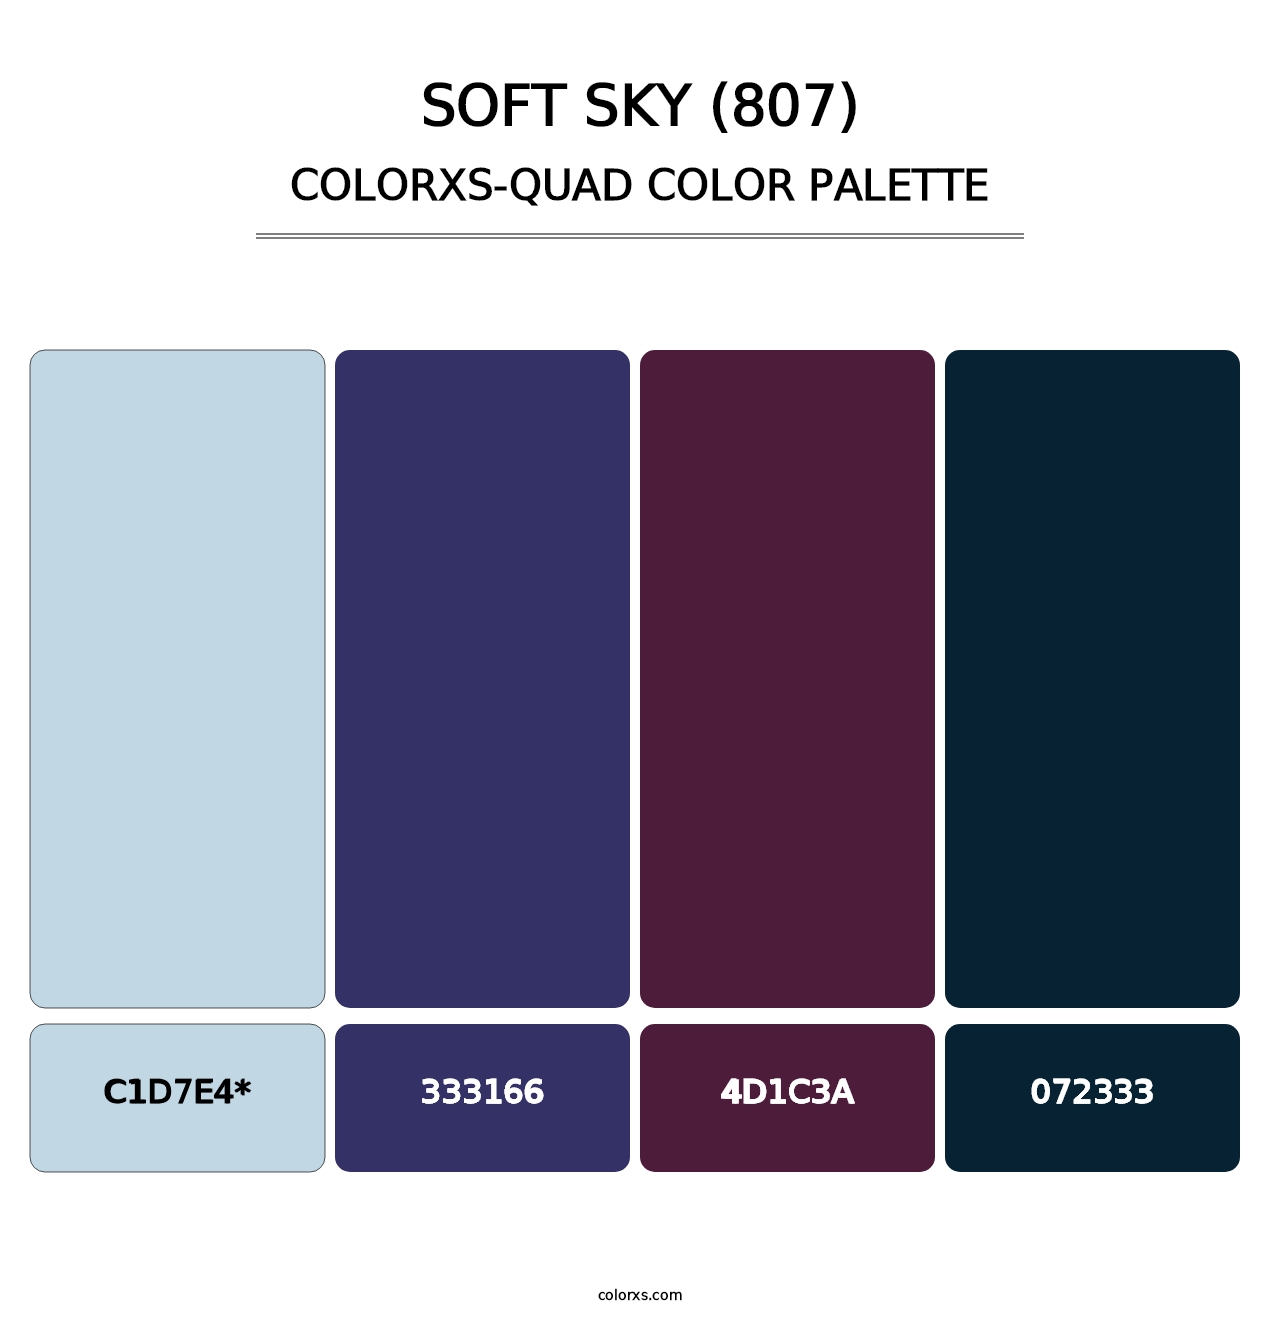 Soft Sky (807) - Colorxs Quad Palette